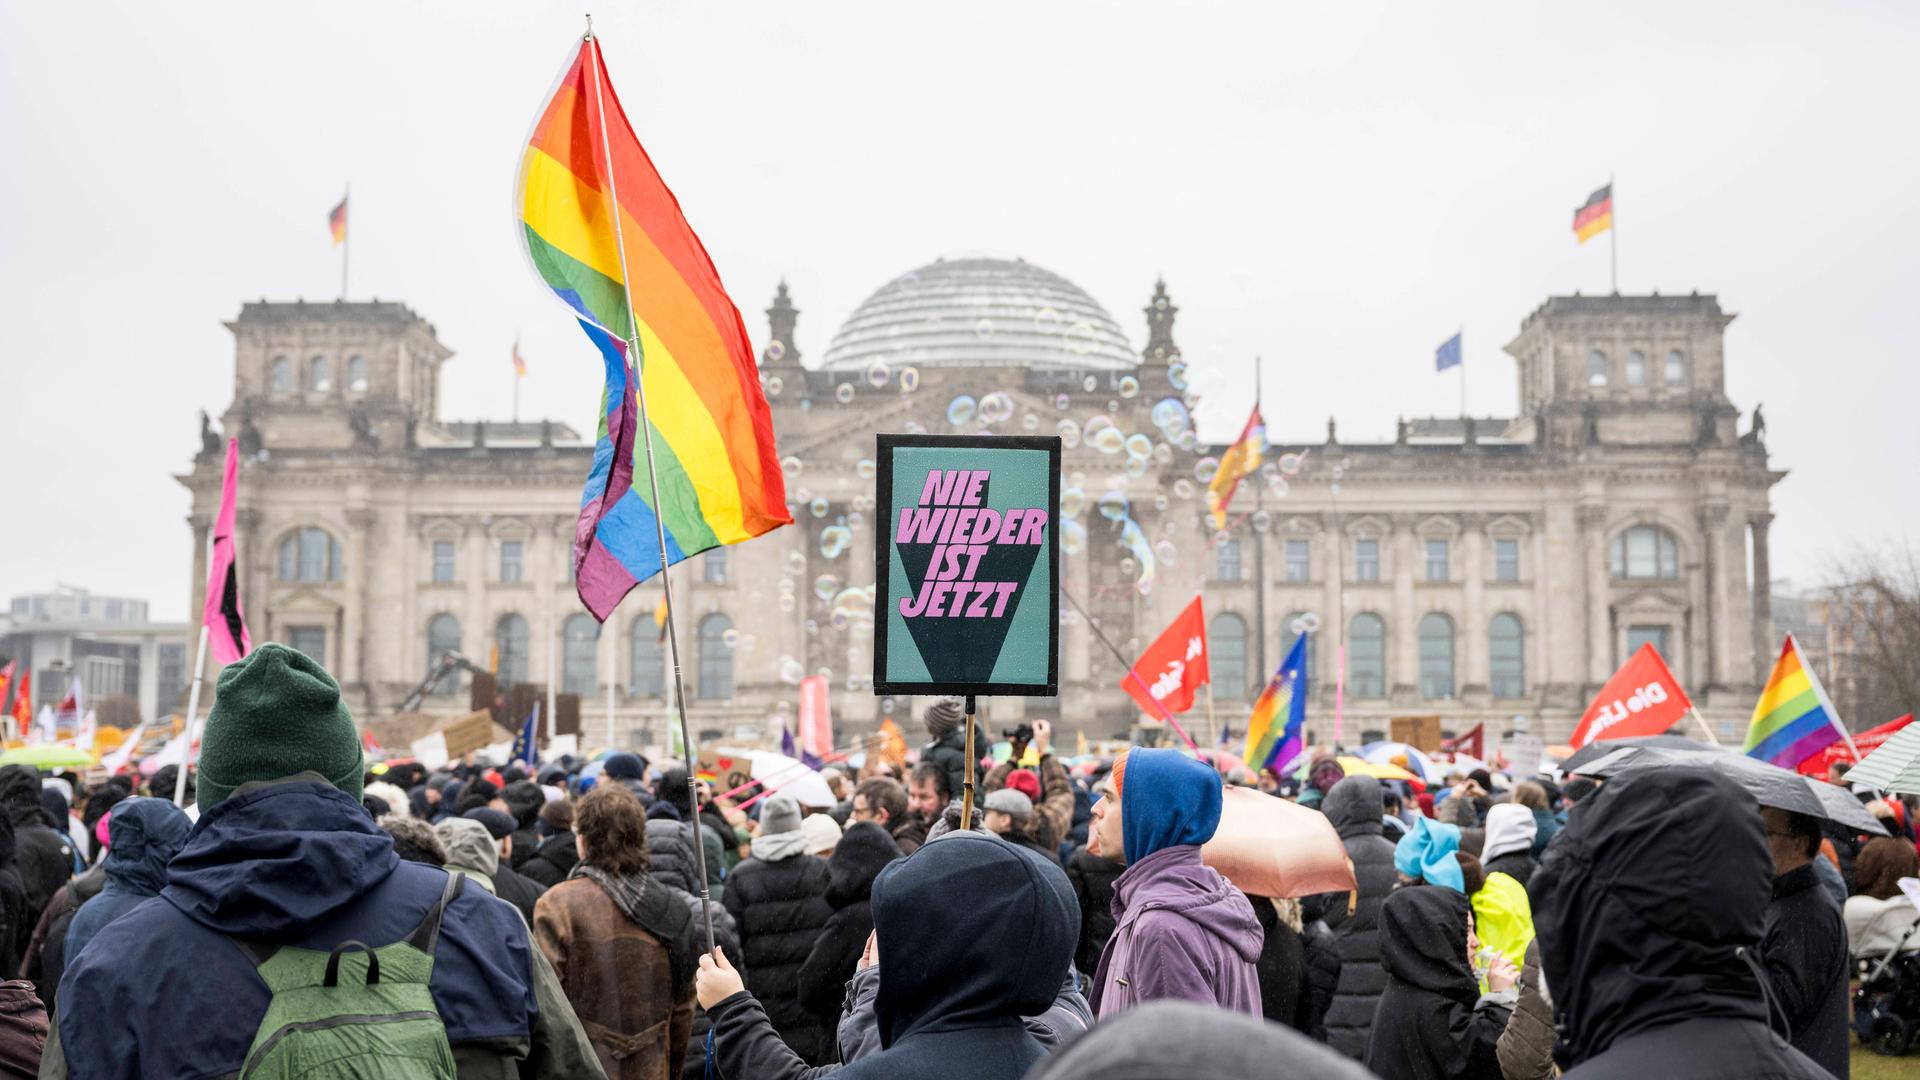 Demonstrierende schwenken Regenbogenflaggen und andere Fahnen vor dem Reichstagsgebäude in Berlin. Auf einem Schild steht er Slogan "Nie wieder ist jetzt".